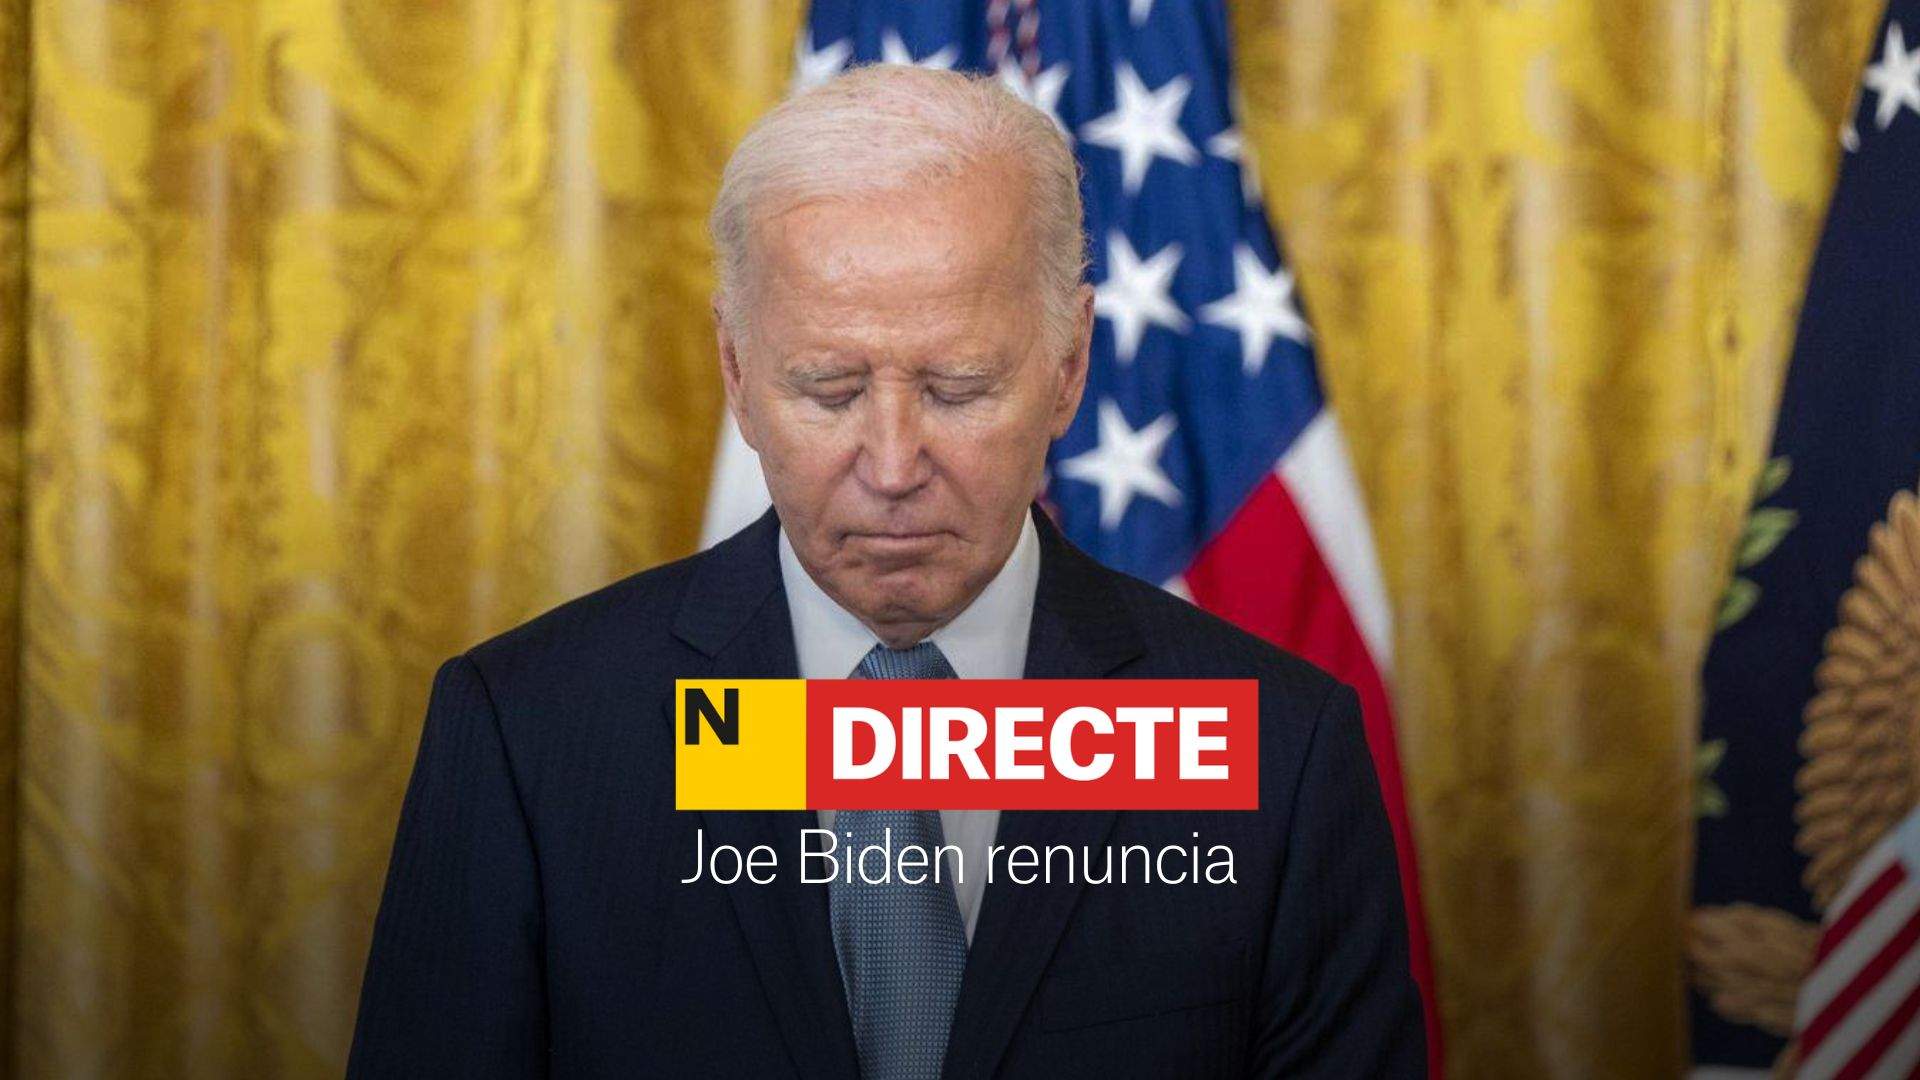 Joe Biden renuncia, DIRECTO | Última hora y reacciones